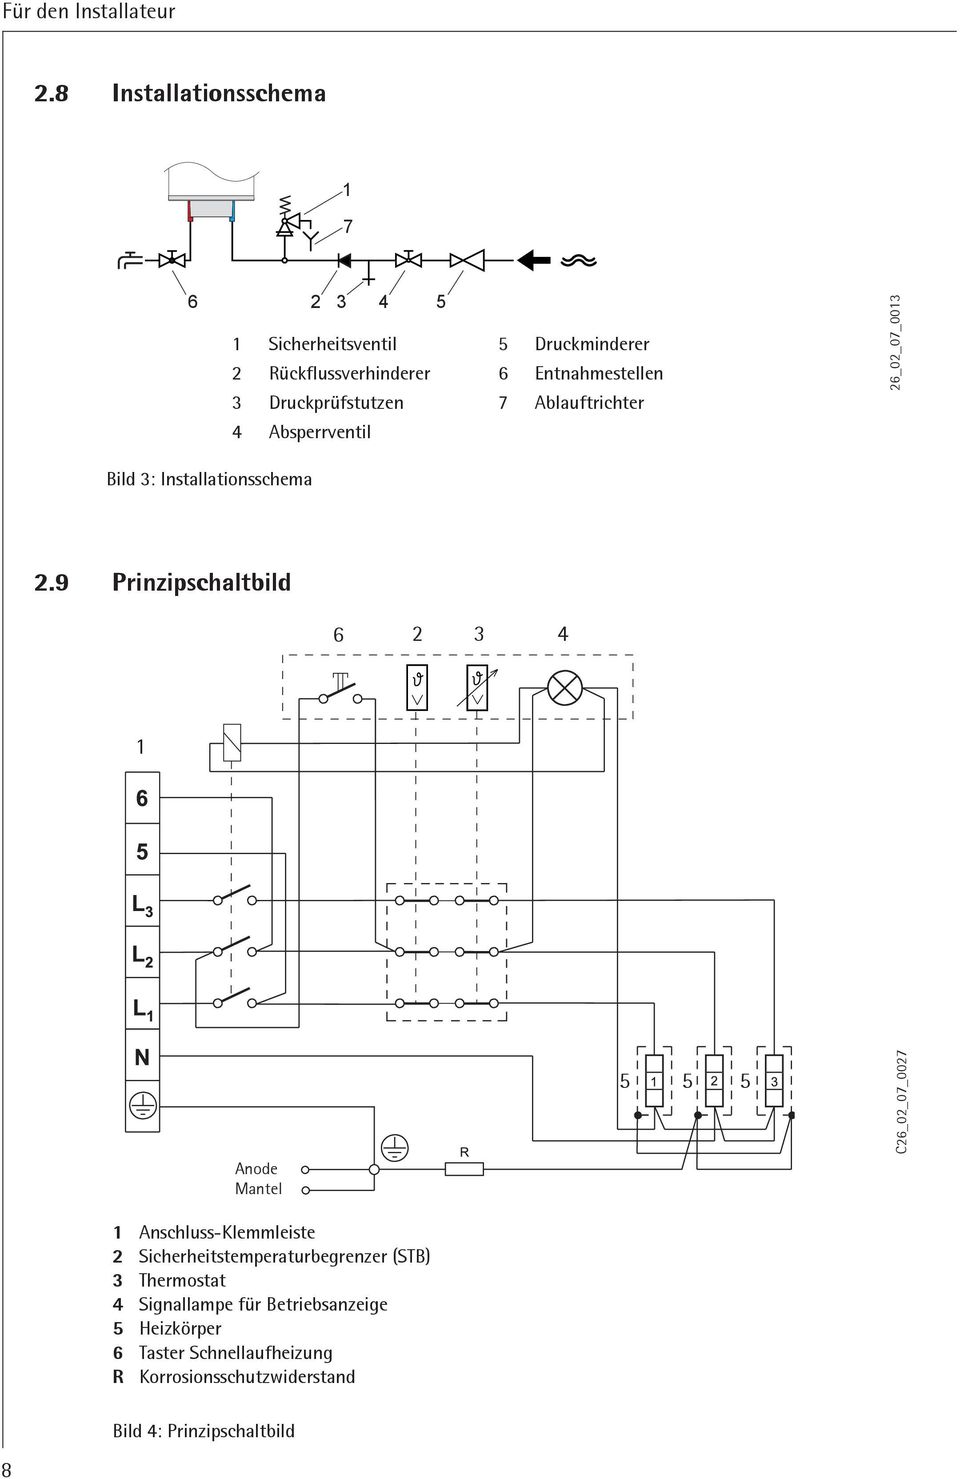 9 Prinzipschaltbild 6 2 3 4 1 Anode Mantel 1 Anschluss-Klemmleiste 2 Sicherheitstemperaturbegrenzer (STB) 3 Thermostat 4